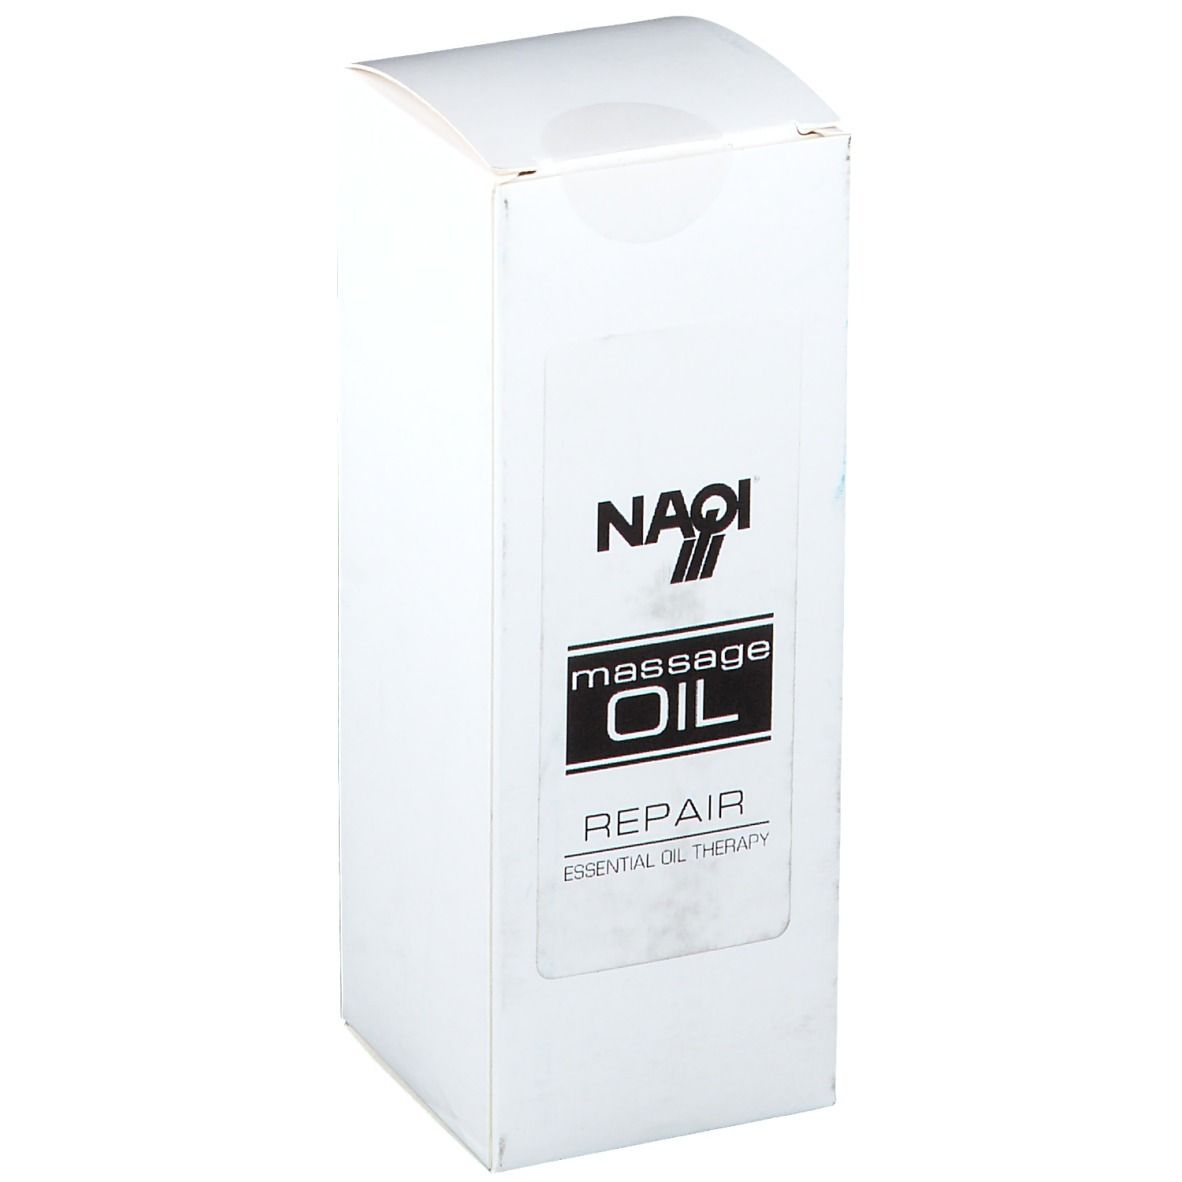 Naqi® Massage Oil Repair Spray